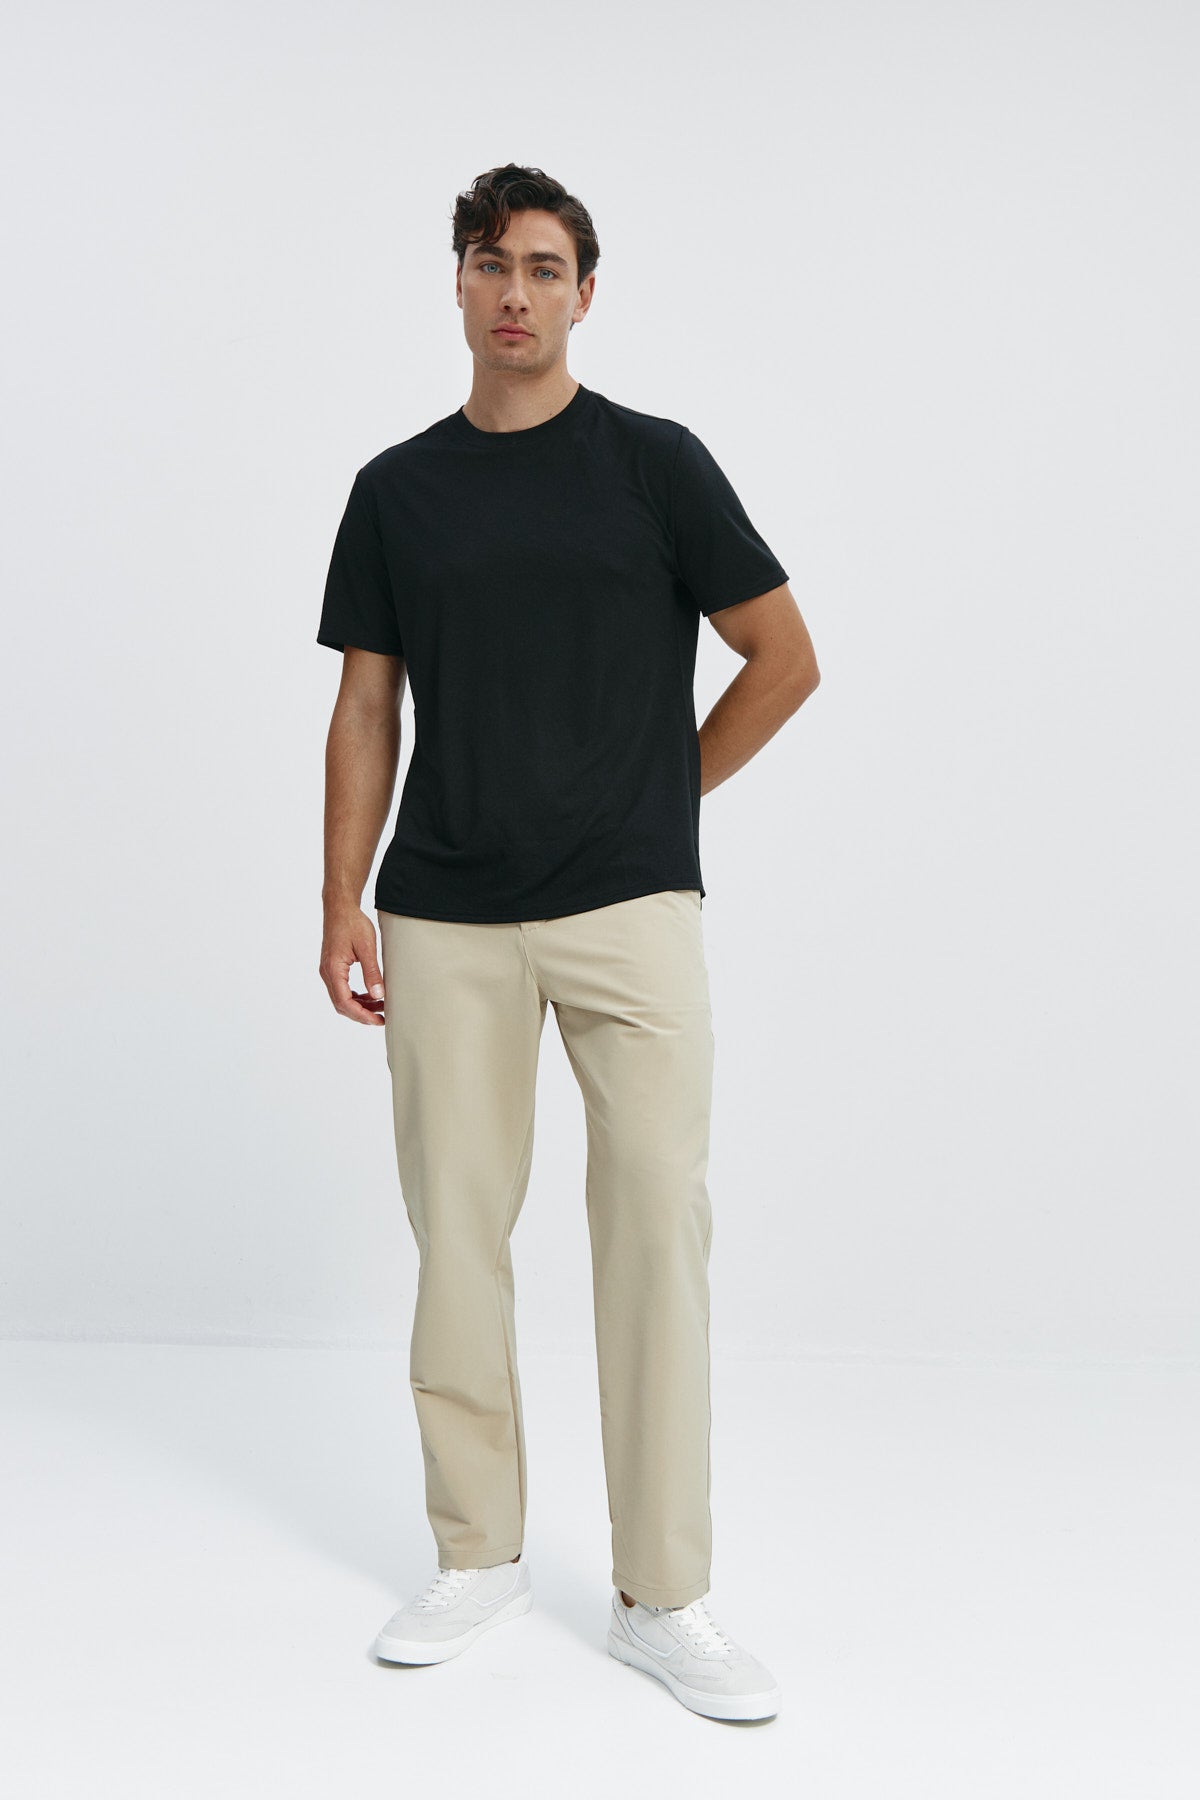 Camiseta de hombre en negro de Sepiia, suave y cómoda, perfecta para cualquier ocasión. Foto cuerpo entero